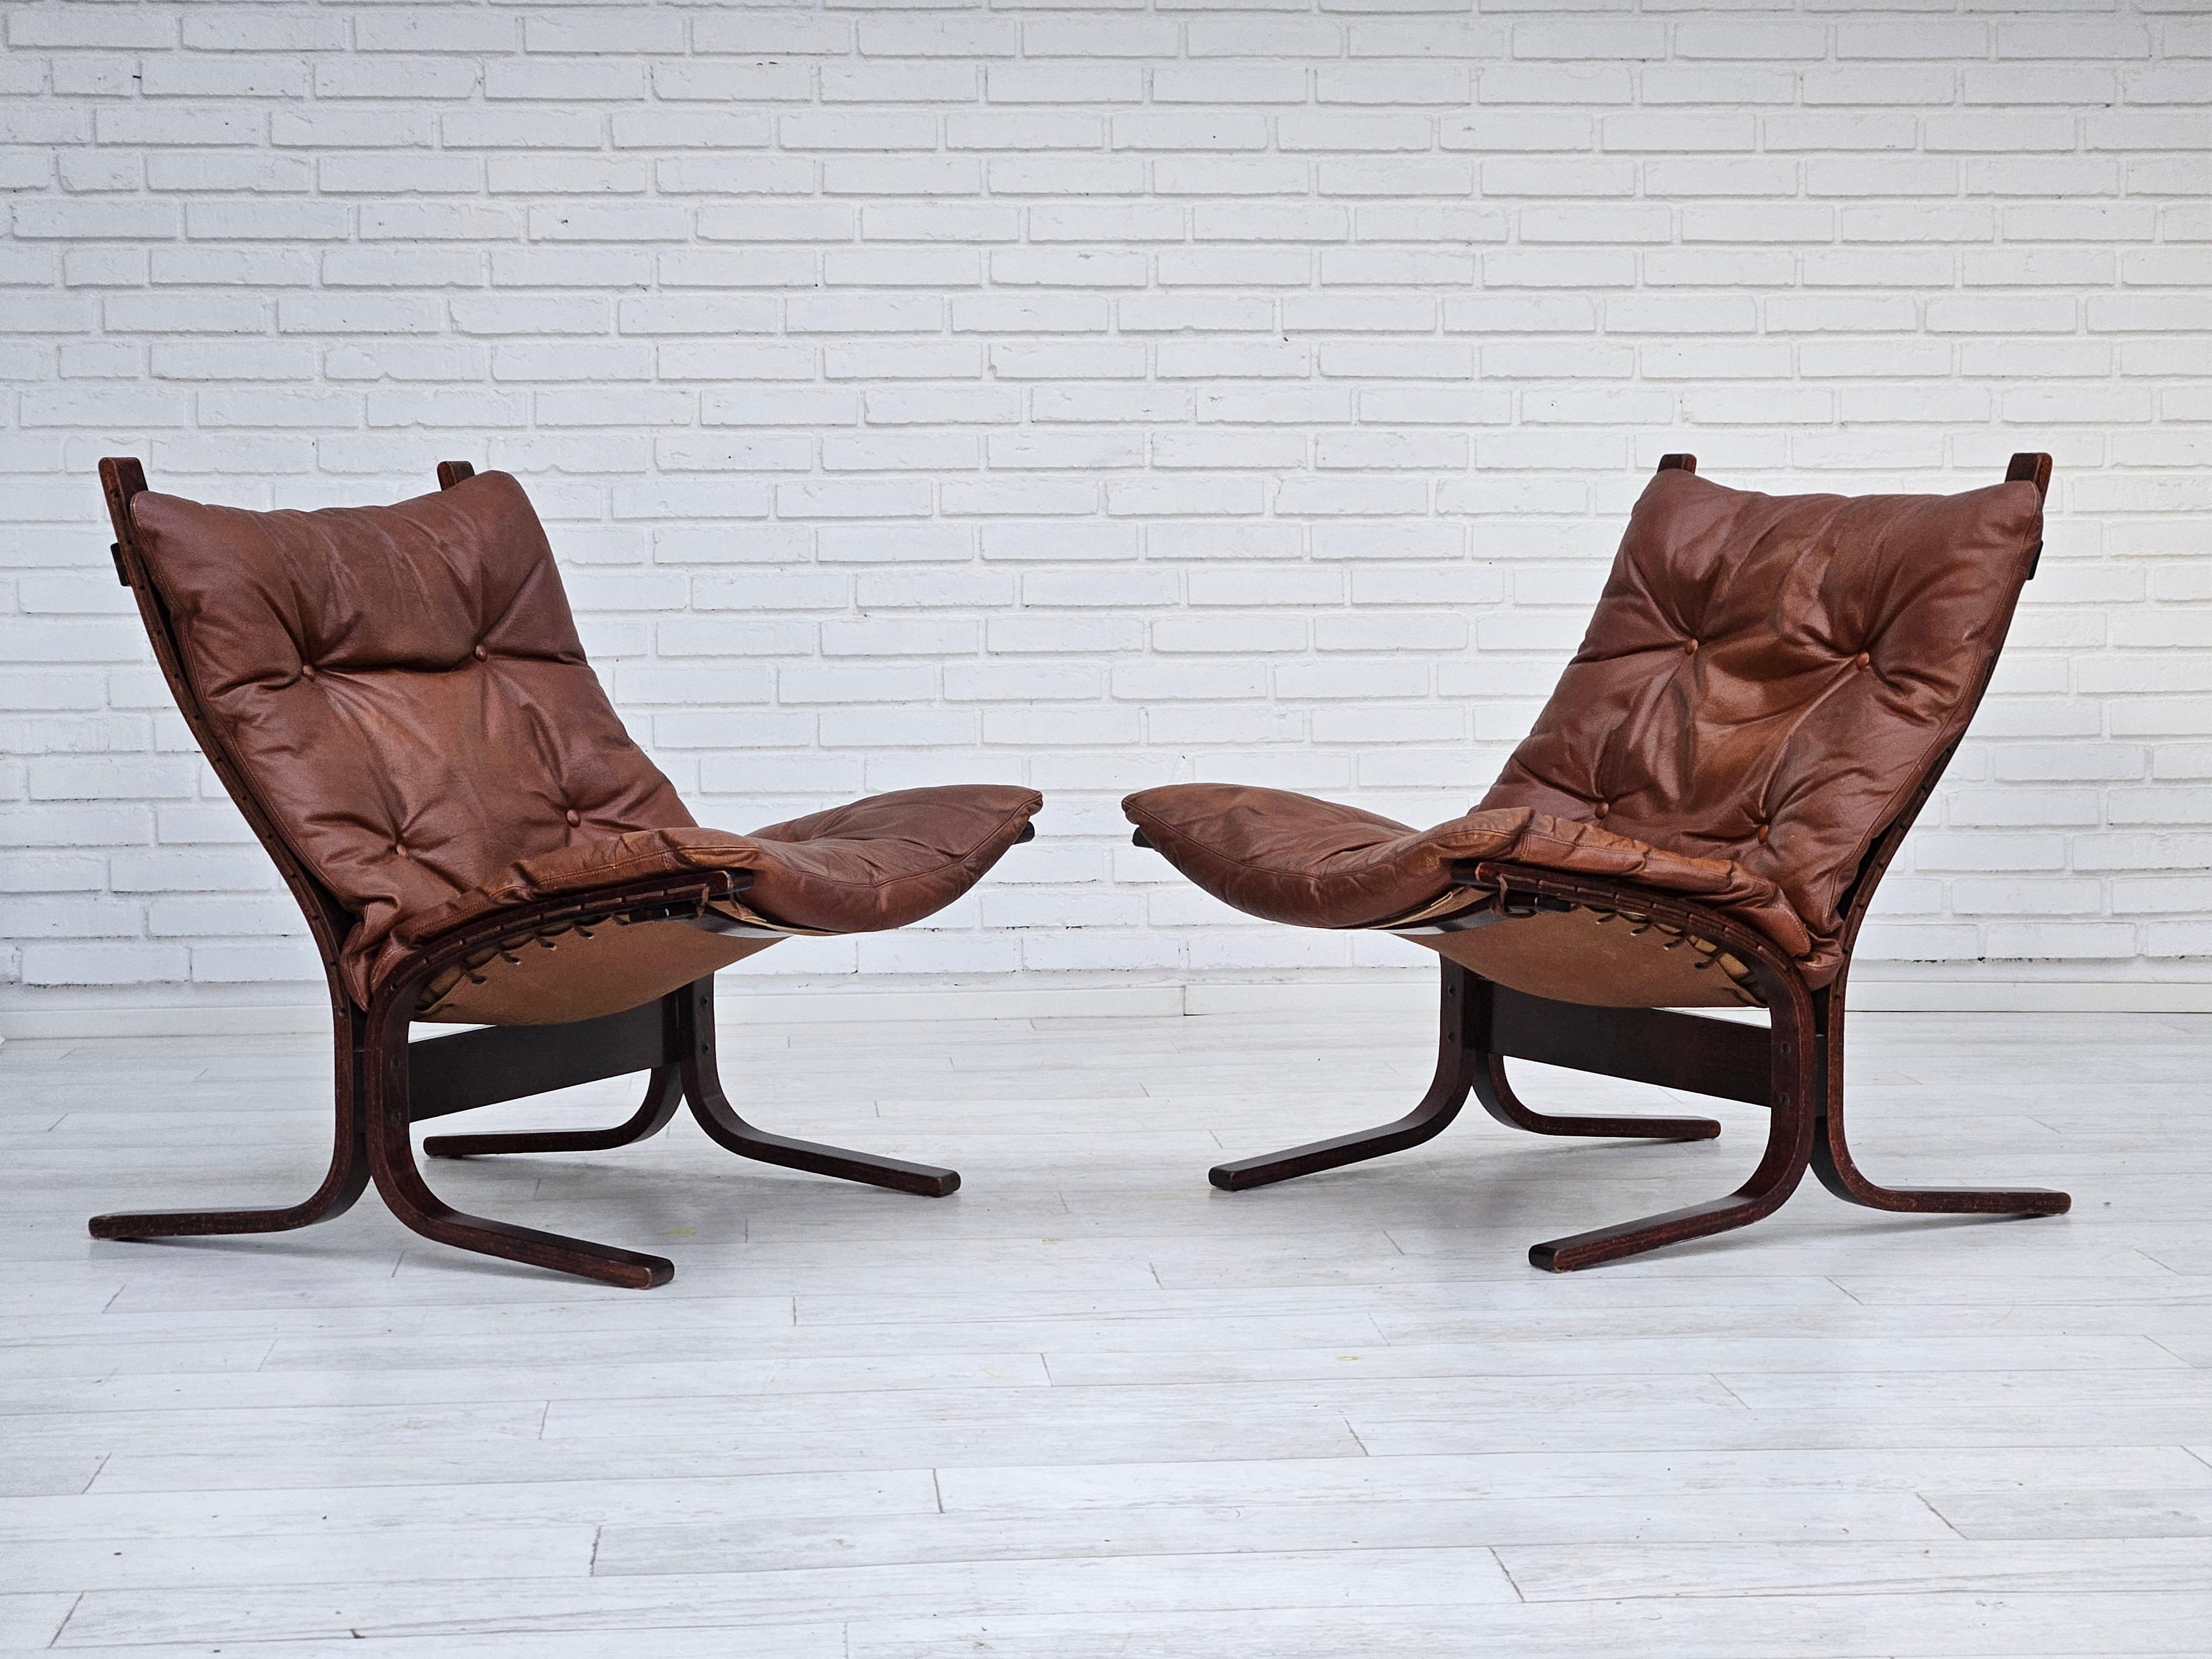 Années 1960-70, design norvégien d'Ingmar Relling pour Westnofa Furniture. Paire de deux chaises longues modèle 